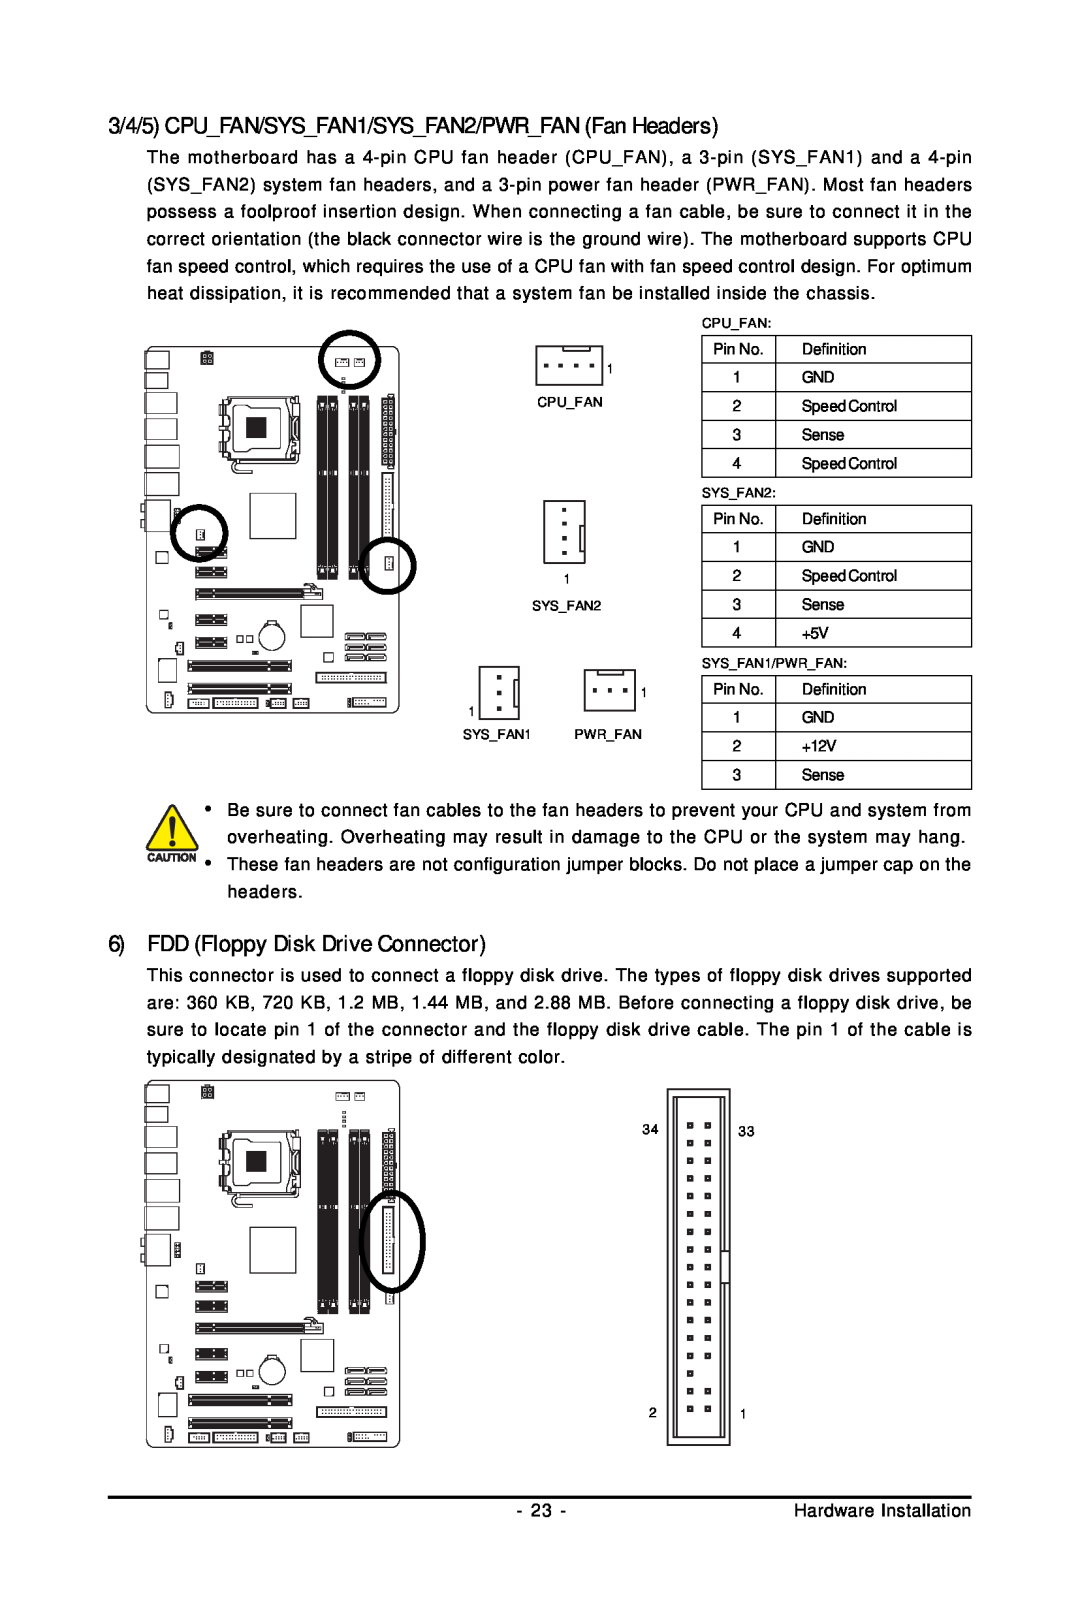 Gigabyte GA-EP45-UD3L user manual 3/4/5 CPUFAN/SYSFAN1/SYSFAN2/PWRFAN Fan Headers, FDD Floppy Disk Drive Connector, headers 